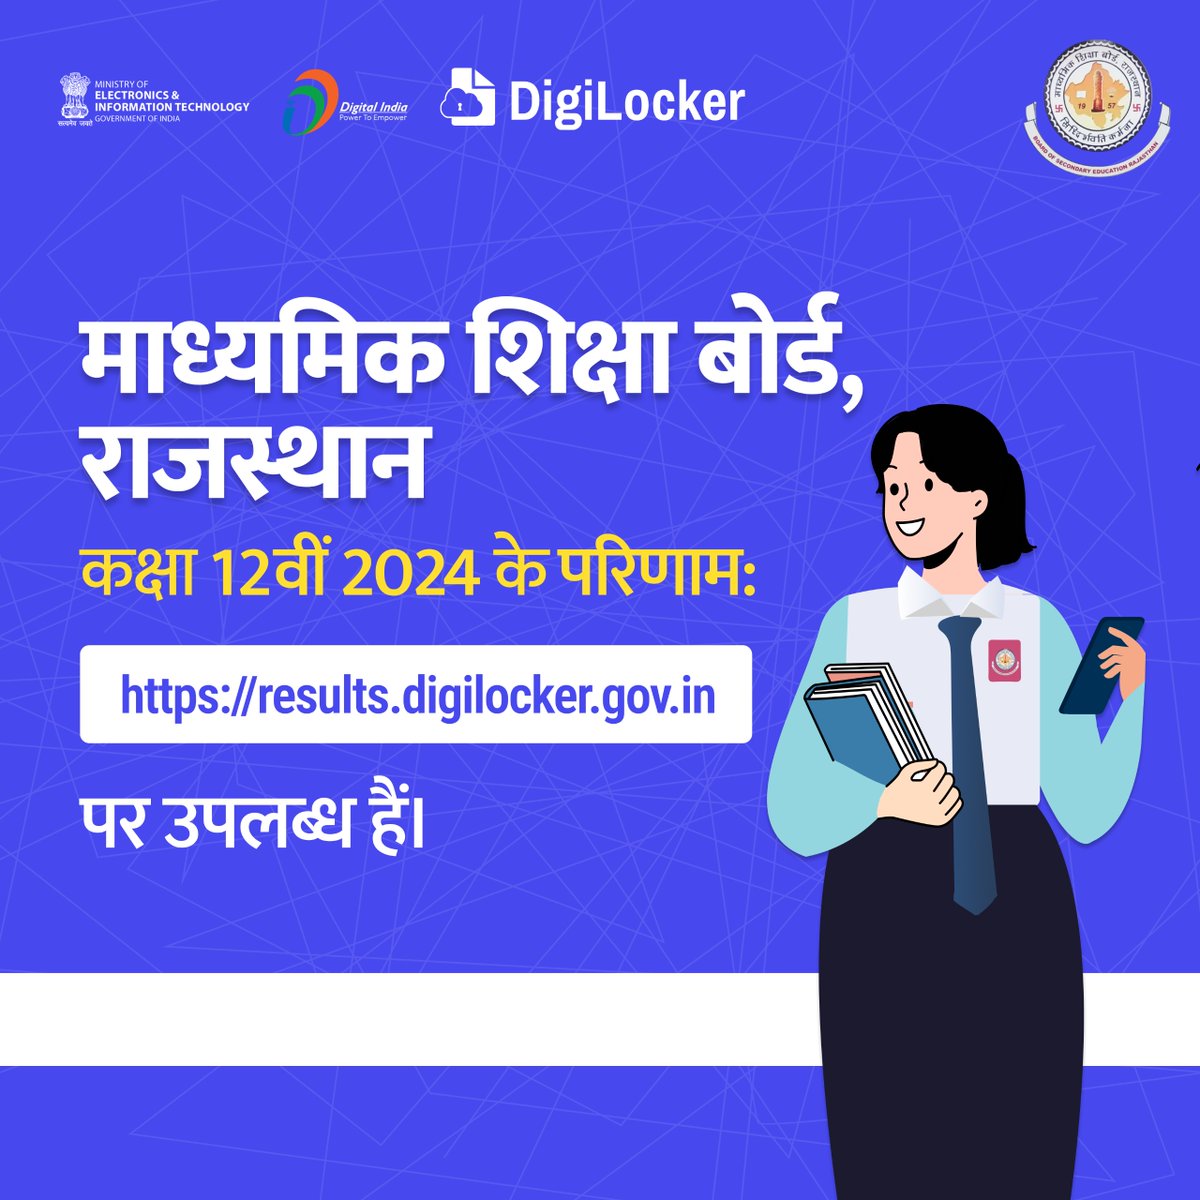 माध्यमिक शिक्षा बोर्ड, राजस्थान, कक्षा 12वीं 2024 के परिणाम  results.digilocker.gov.in पर उपलब्ध हैं। अपने परिणाम को आसानी से देखें!